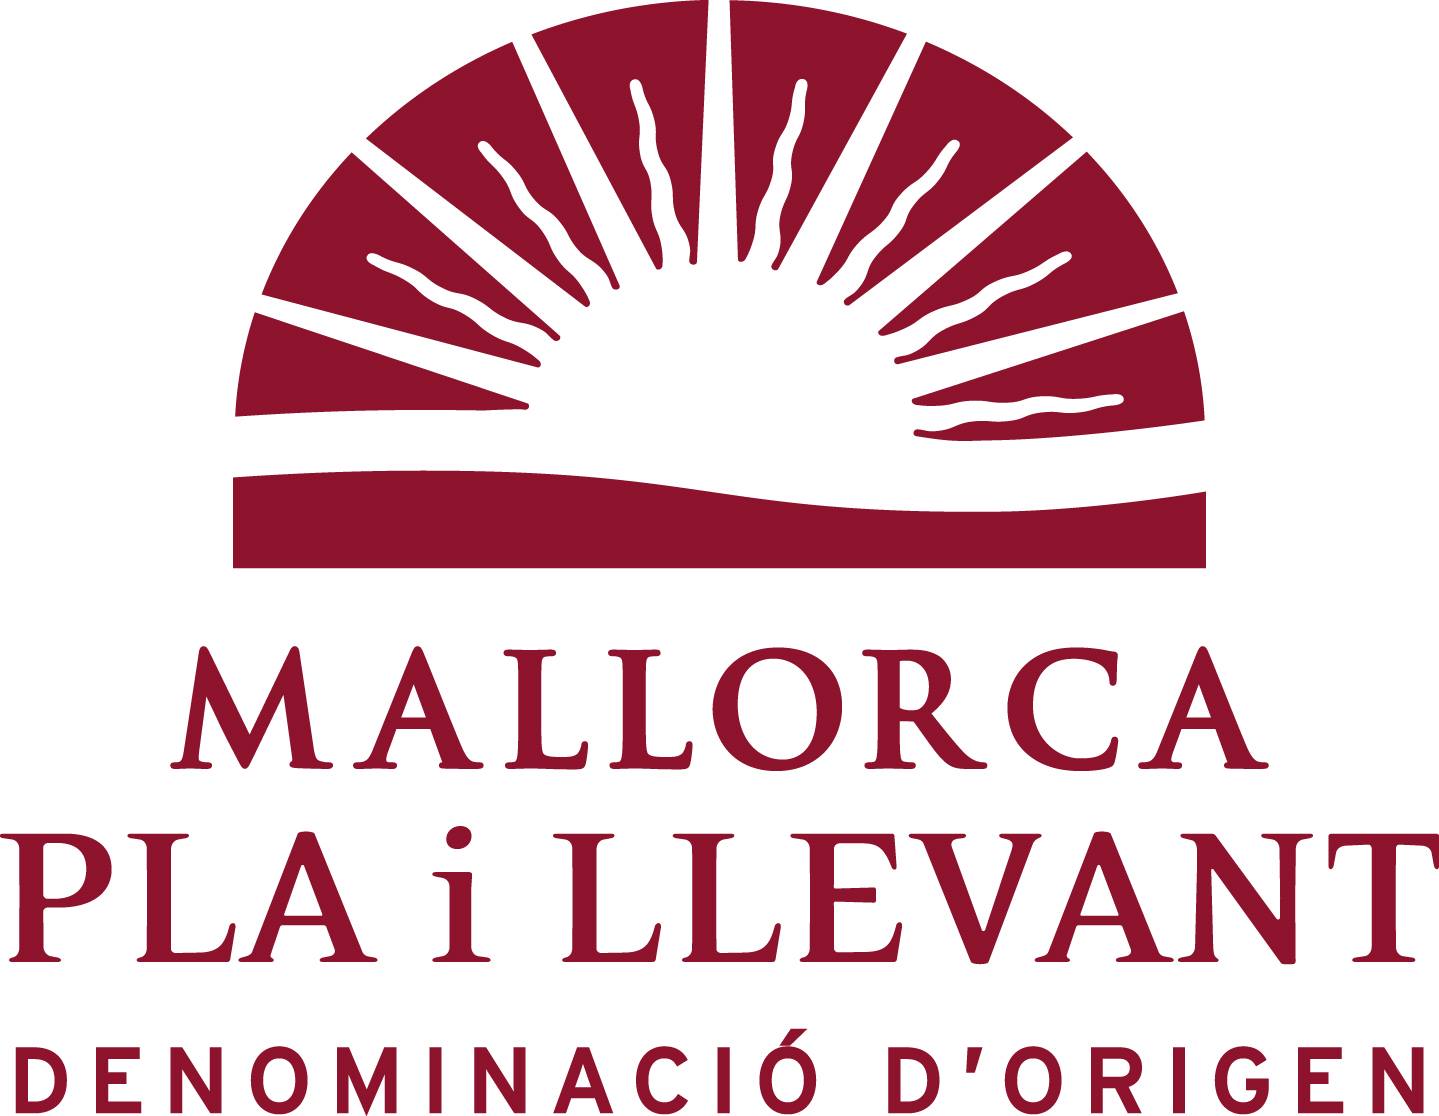 Pla i Llevant - Islas Baleares - Productos agroalimentarios, denominaciones de origen y gastronomía balear